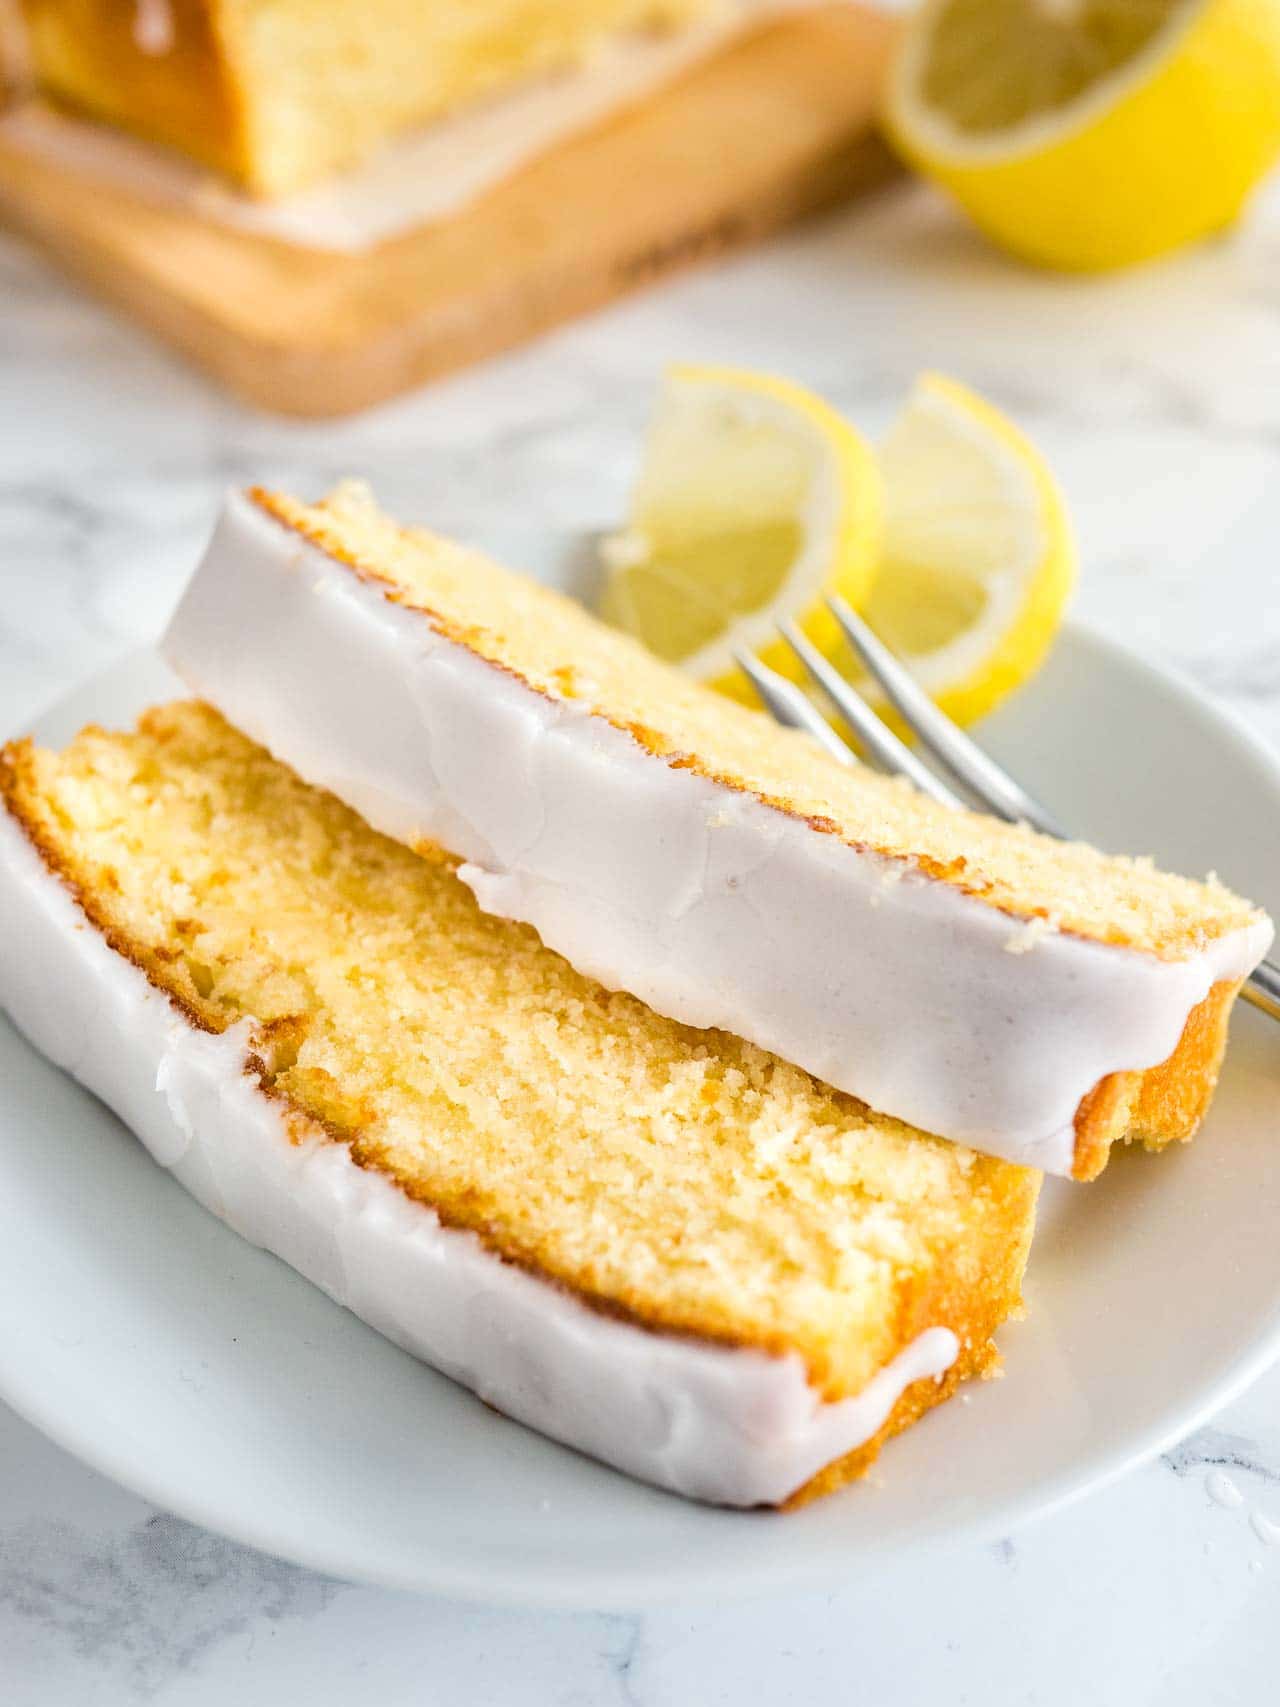 https://platedcravings.com/wp-content/uploads/2017/08/Moist-Lemon-Cake-Recipe-Plated-Cravings-3.jpg Recipe